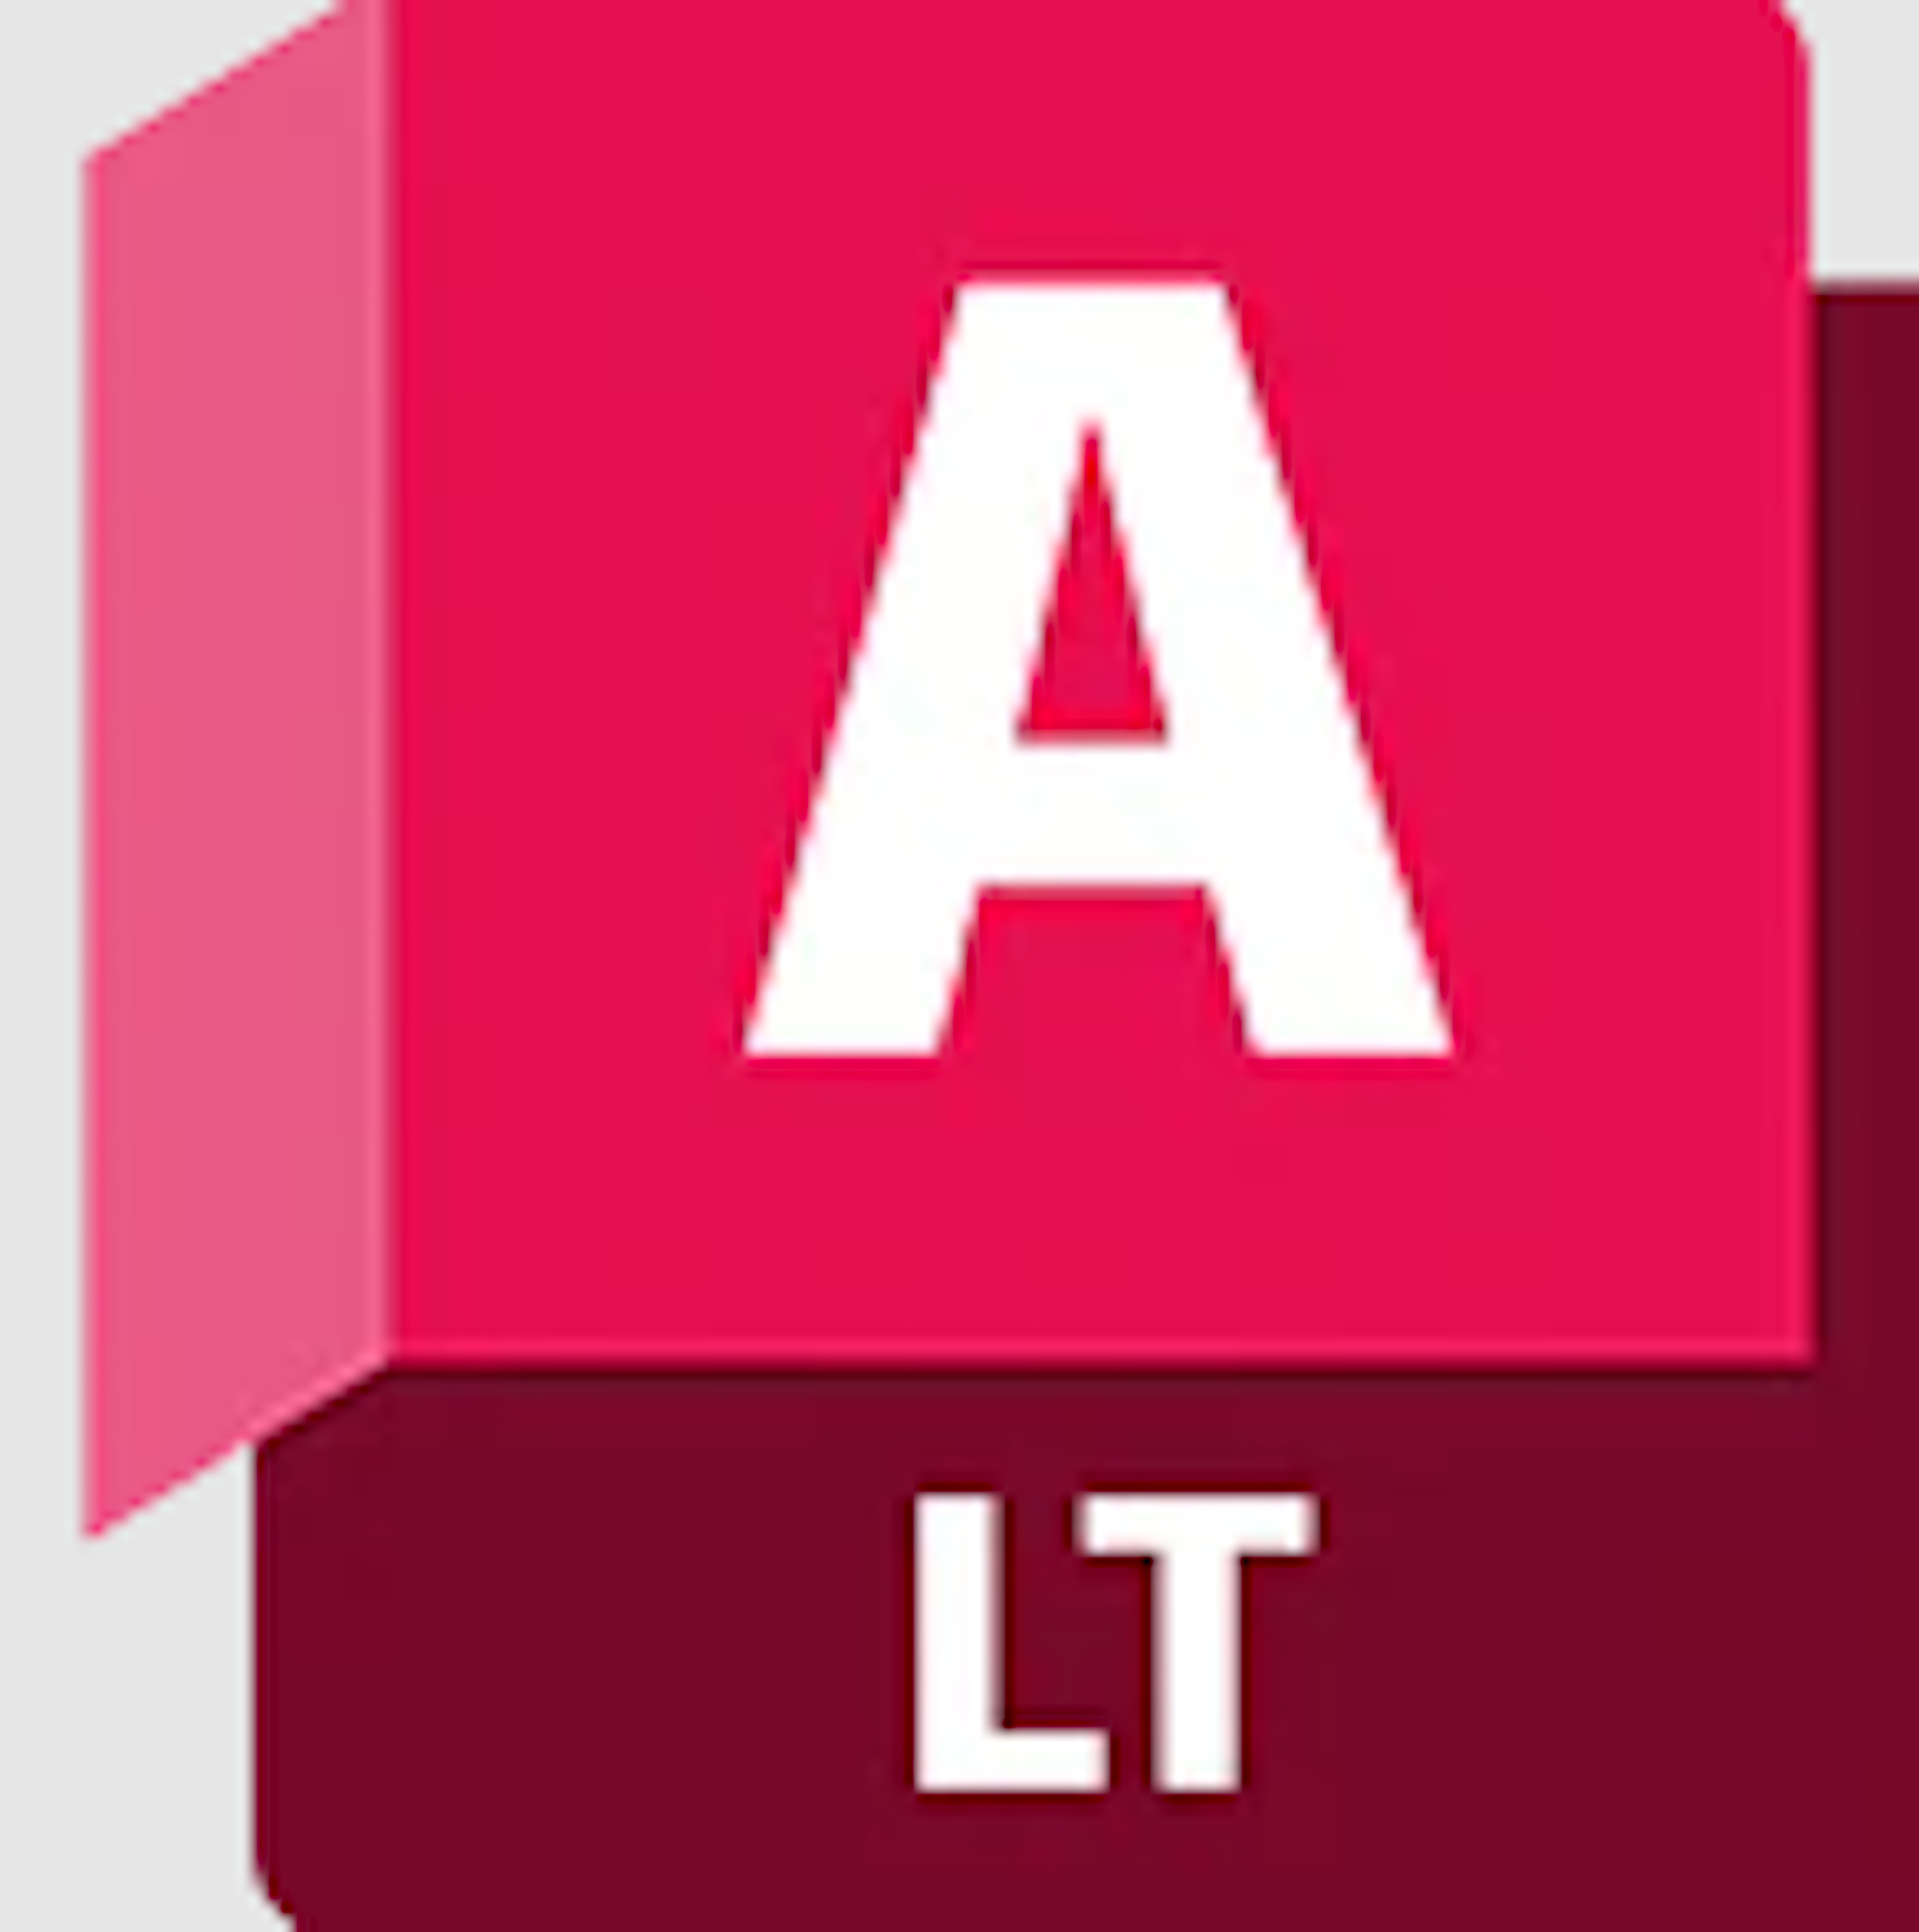 AutoCAD LT Logo